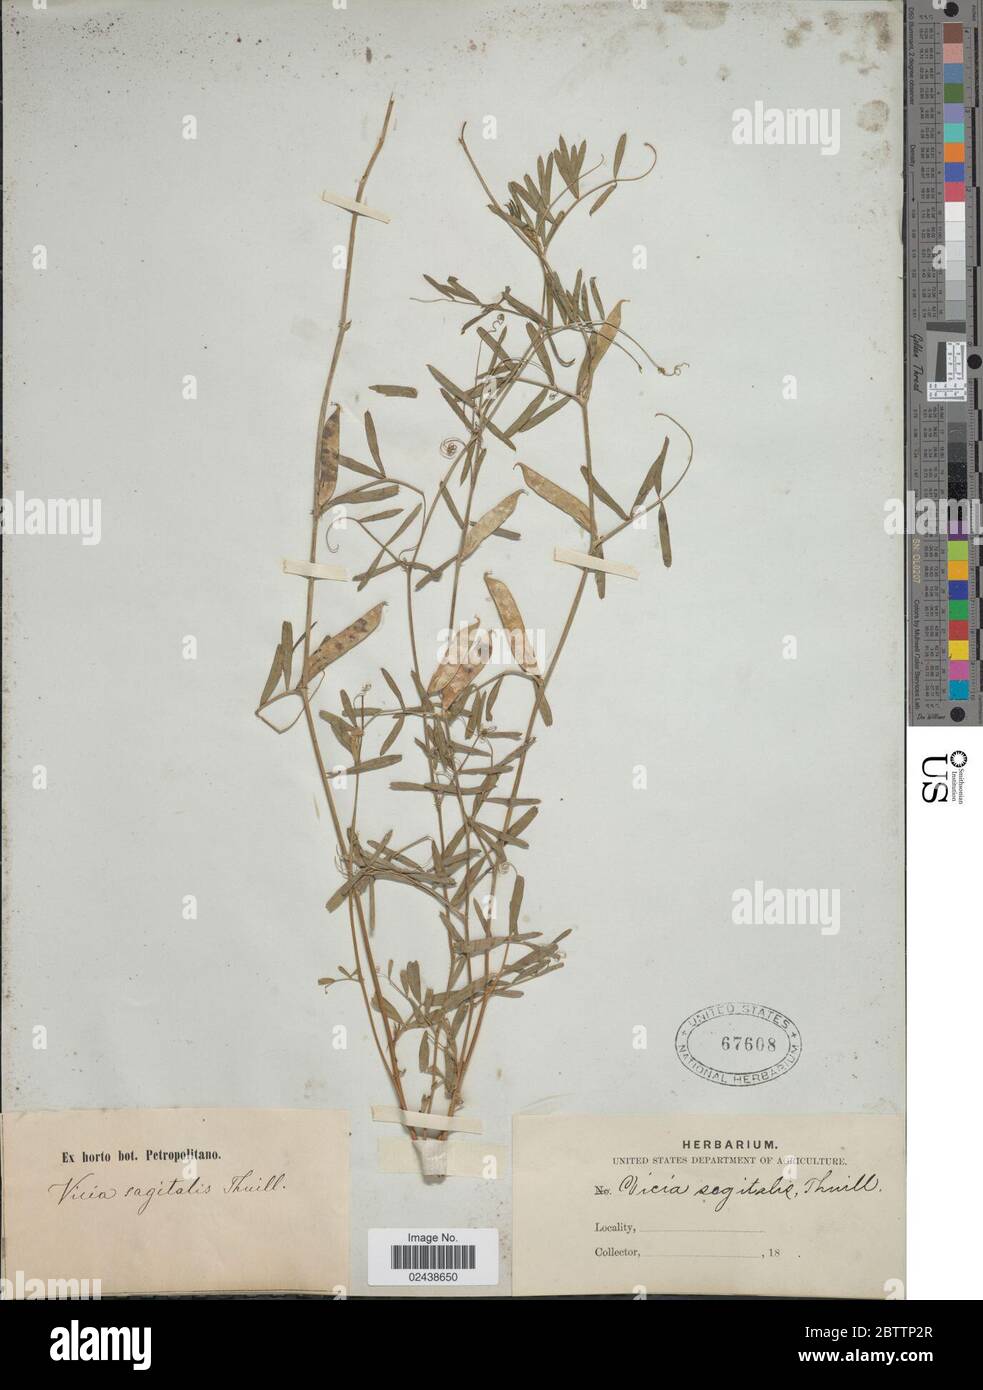 Vicia angustifolia L. Stock Photo